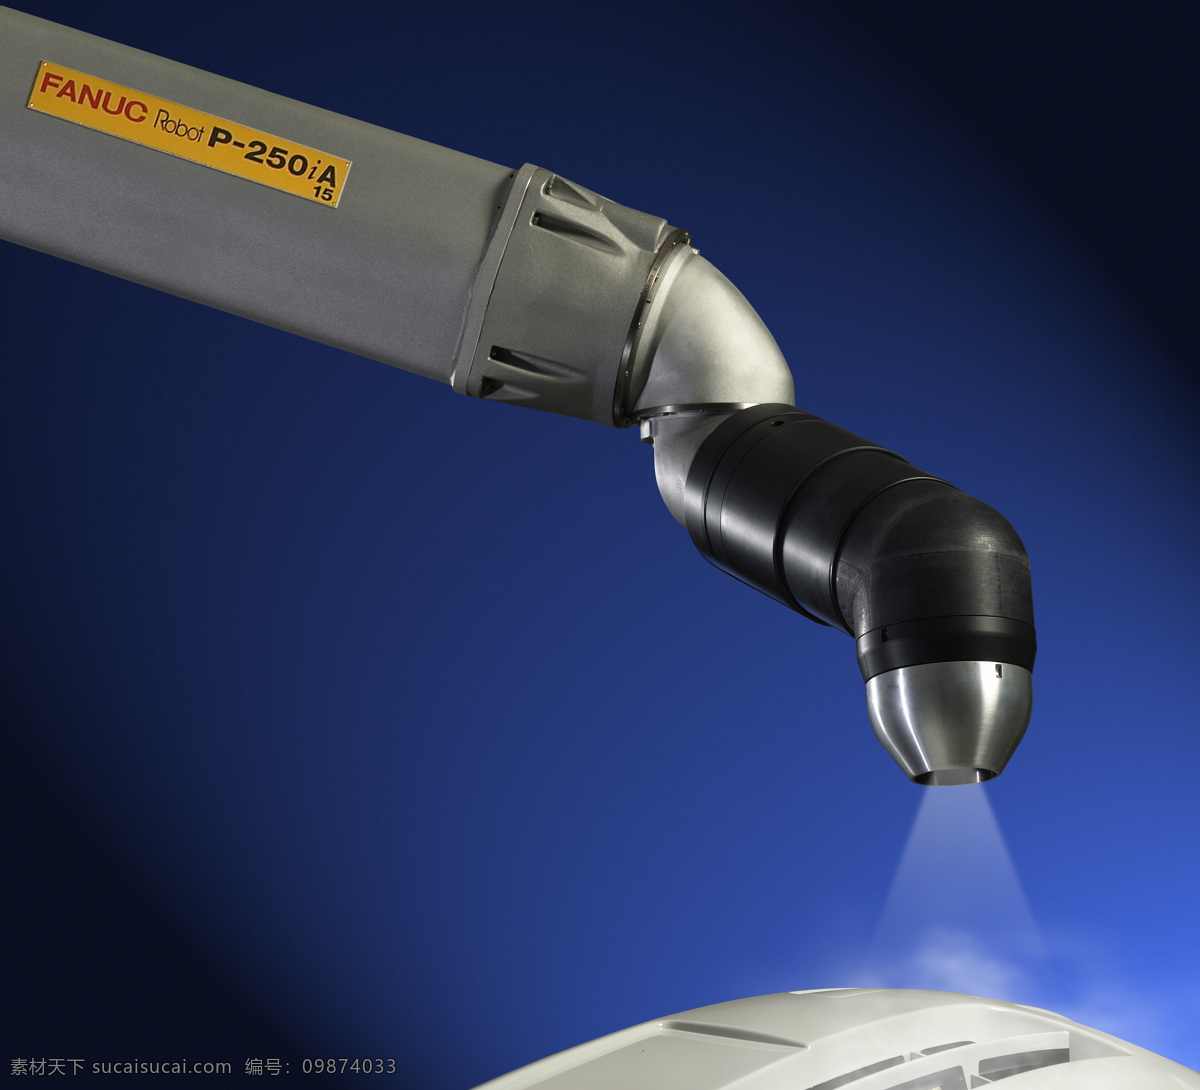 自动化系统 机器人 自动化 视觉系统 机械手臂 机器制造 工业生产 现代科技